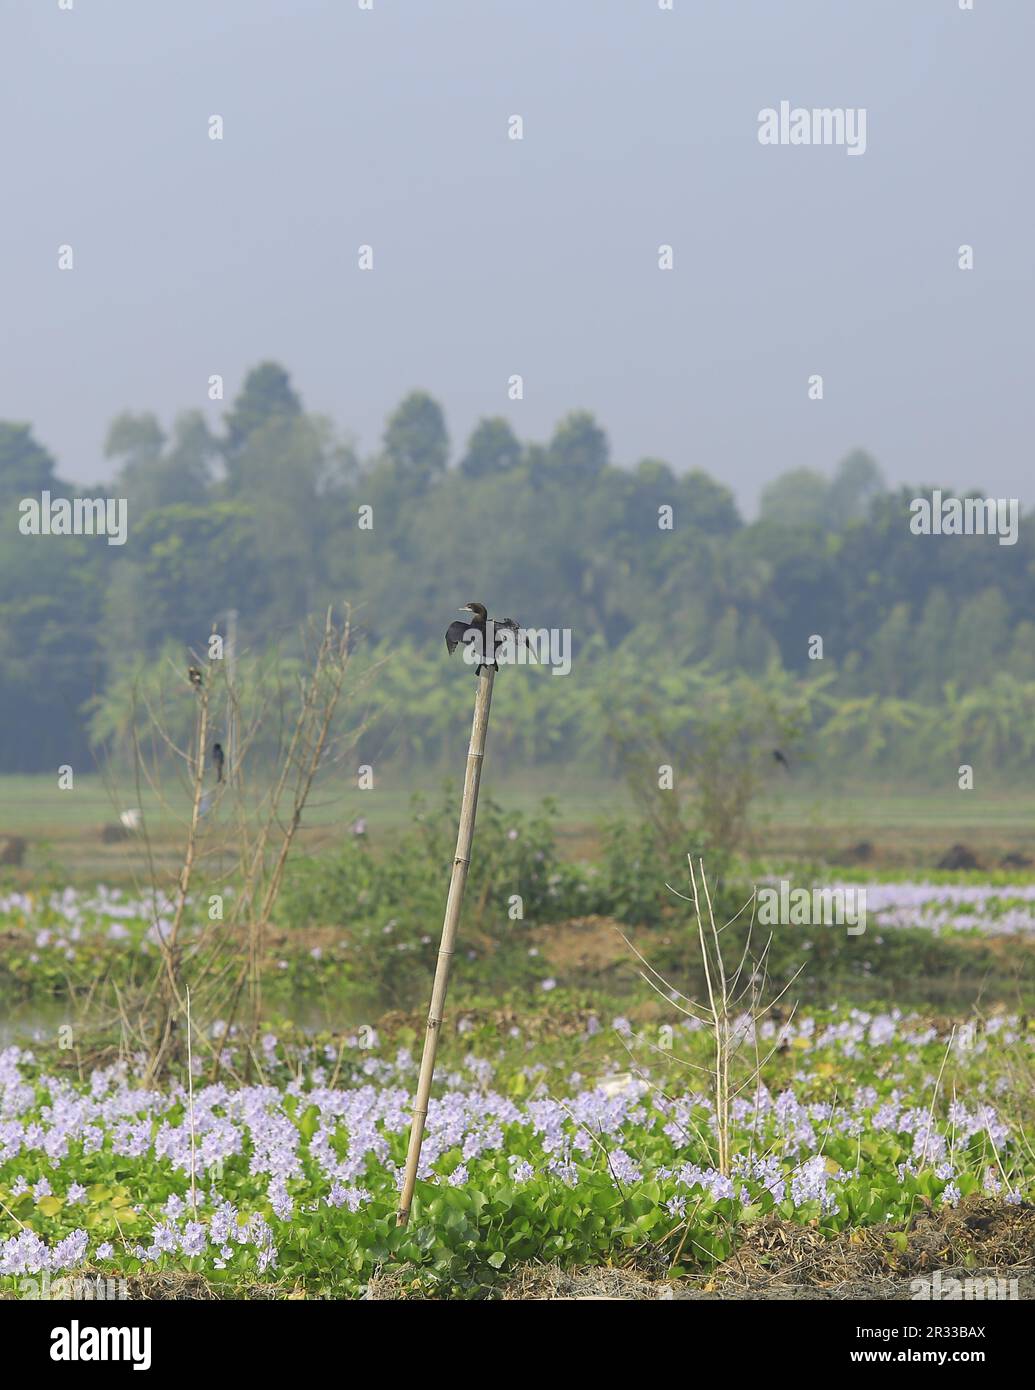 Pájaro cormorán esperando seco en bambú Foto de stock